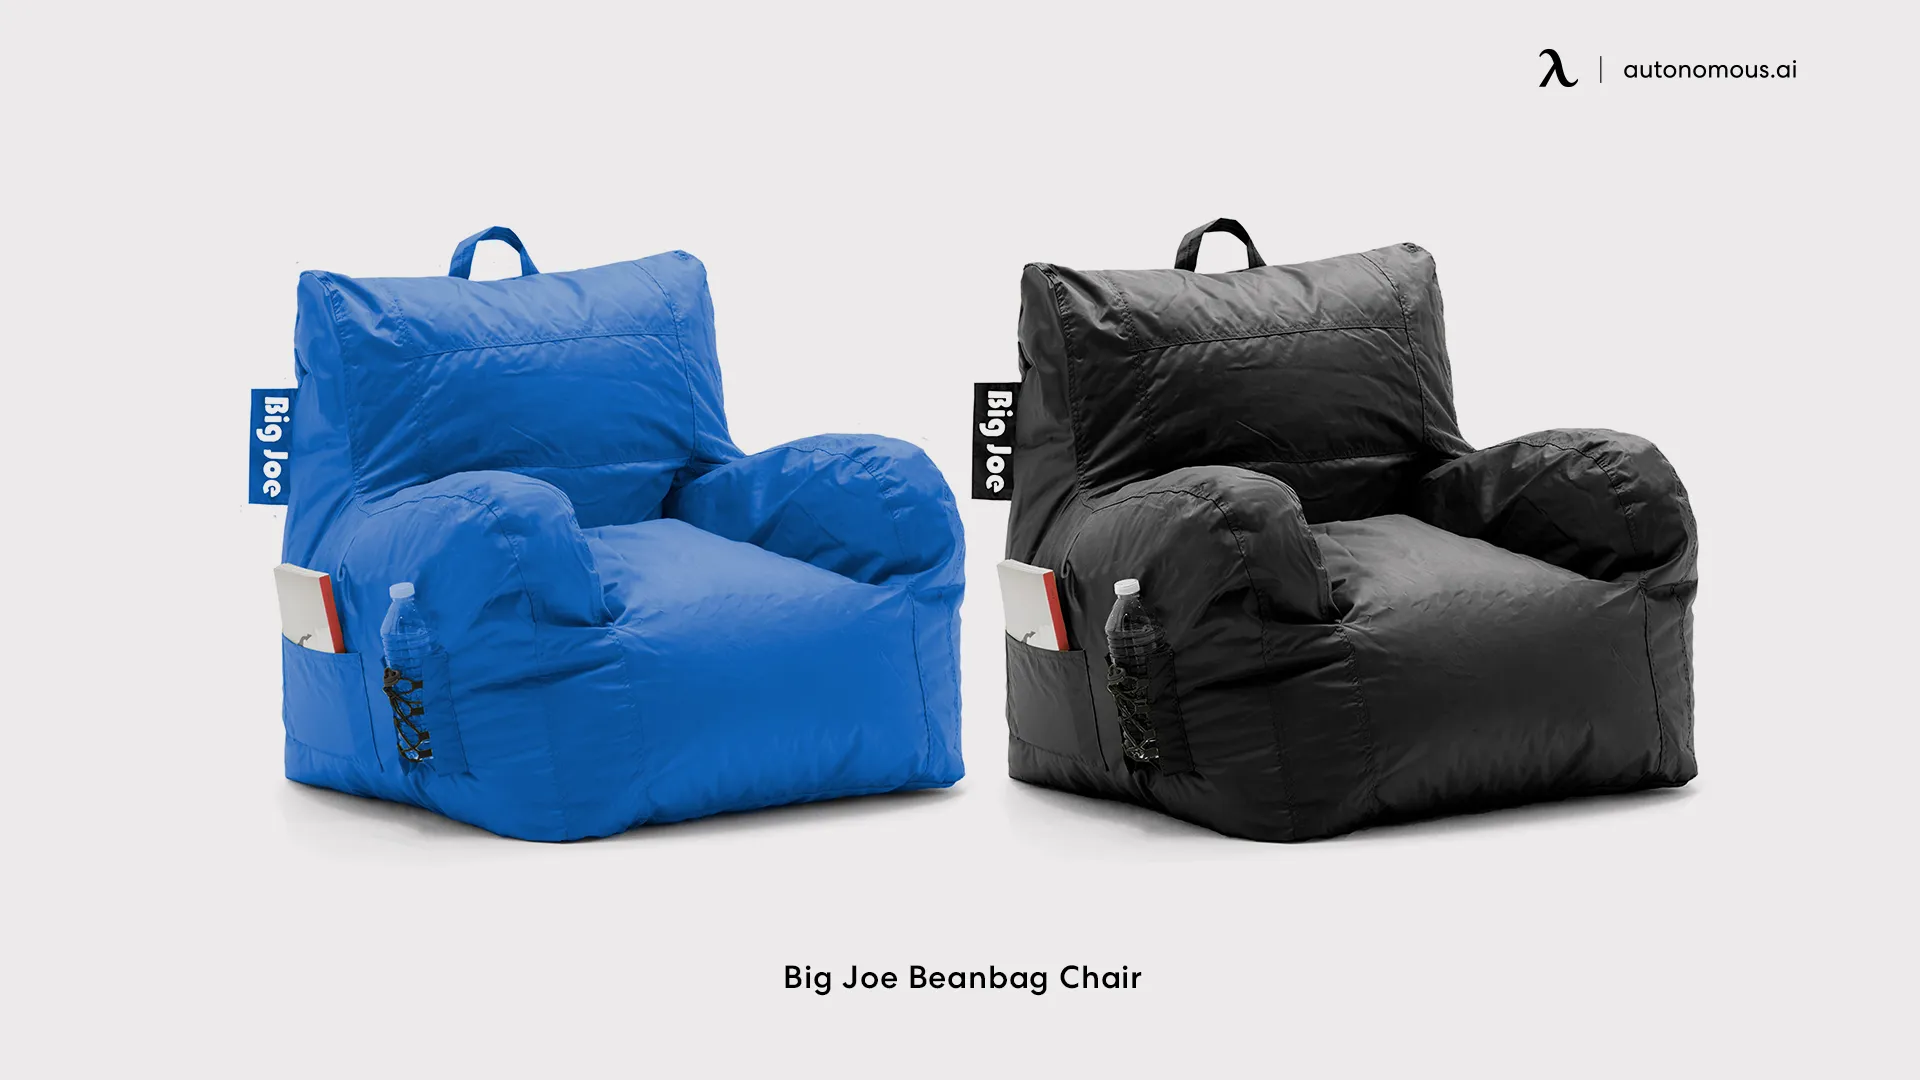 Big Joe Beanbag Chair